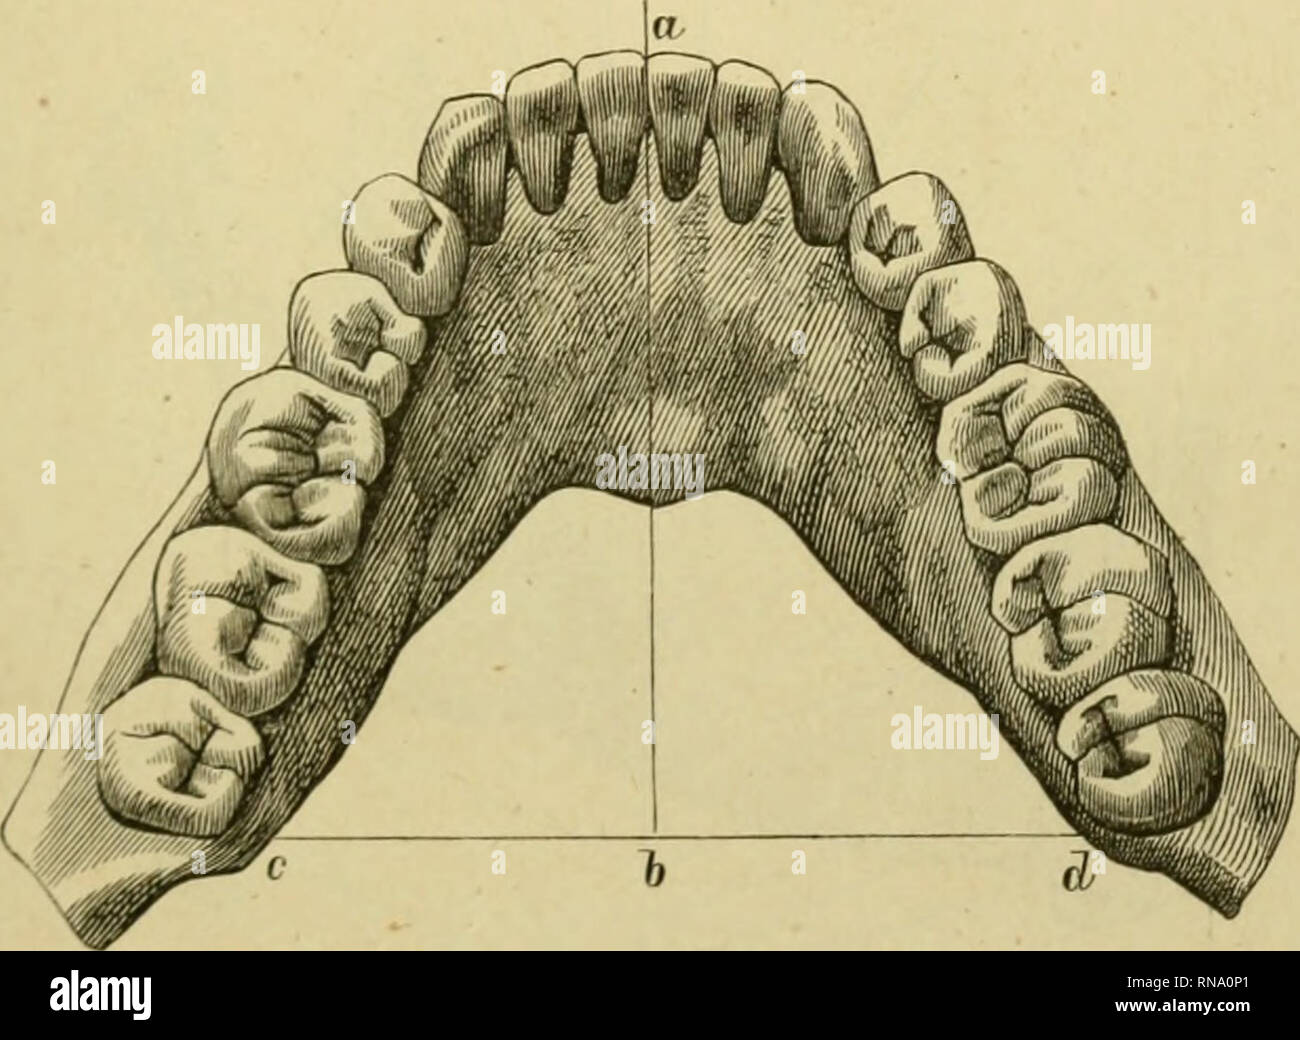 . Anatomie des menschlichen Gebisses, mit besonderer Rücksicht auf die Bedürfnisse der Zahnersatzkunde. Tooth; Dentition; Anatomy. 103 zum Vorderzahne; sie behält zum mindesten immer noch so weit die Oberhand, dass eine entgegengesetzte, fächerartige Aufstellung der Frontzähne vermieden wird. Der Bogen, den die untere Zahnreihe beschreibt, gleicht einer Parabel; seine Schenkel weichen demgemäss nach rückwärts in gleichmässiger Progression auseinander. Die Distanz zwischen den Spitzen der distalen Wangenhügel der Weisheitszähne (c d^ Fig. 64), ist fast ebenso gross, wie die Querachse der oberen Stock Photo